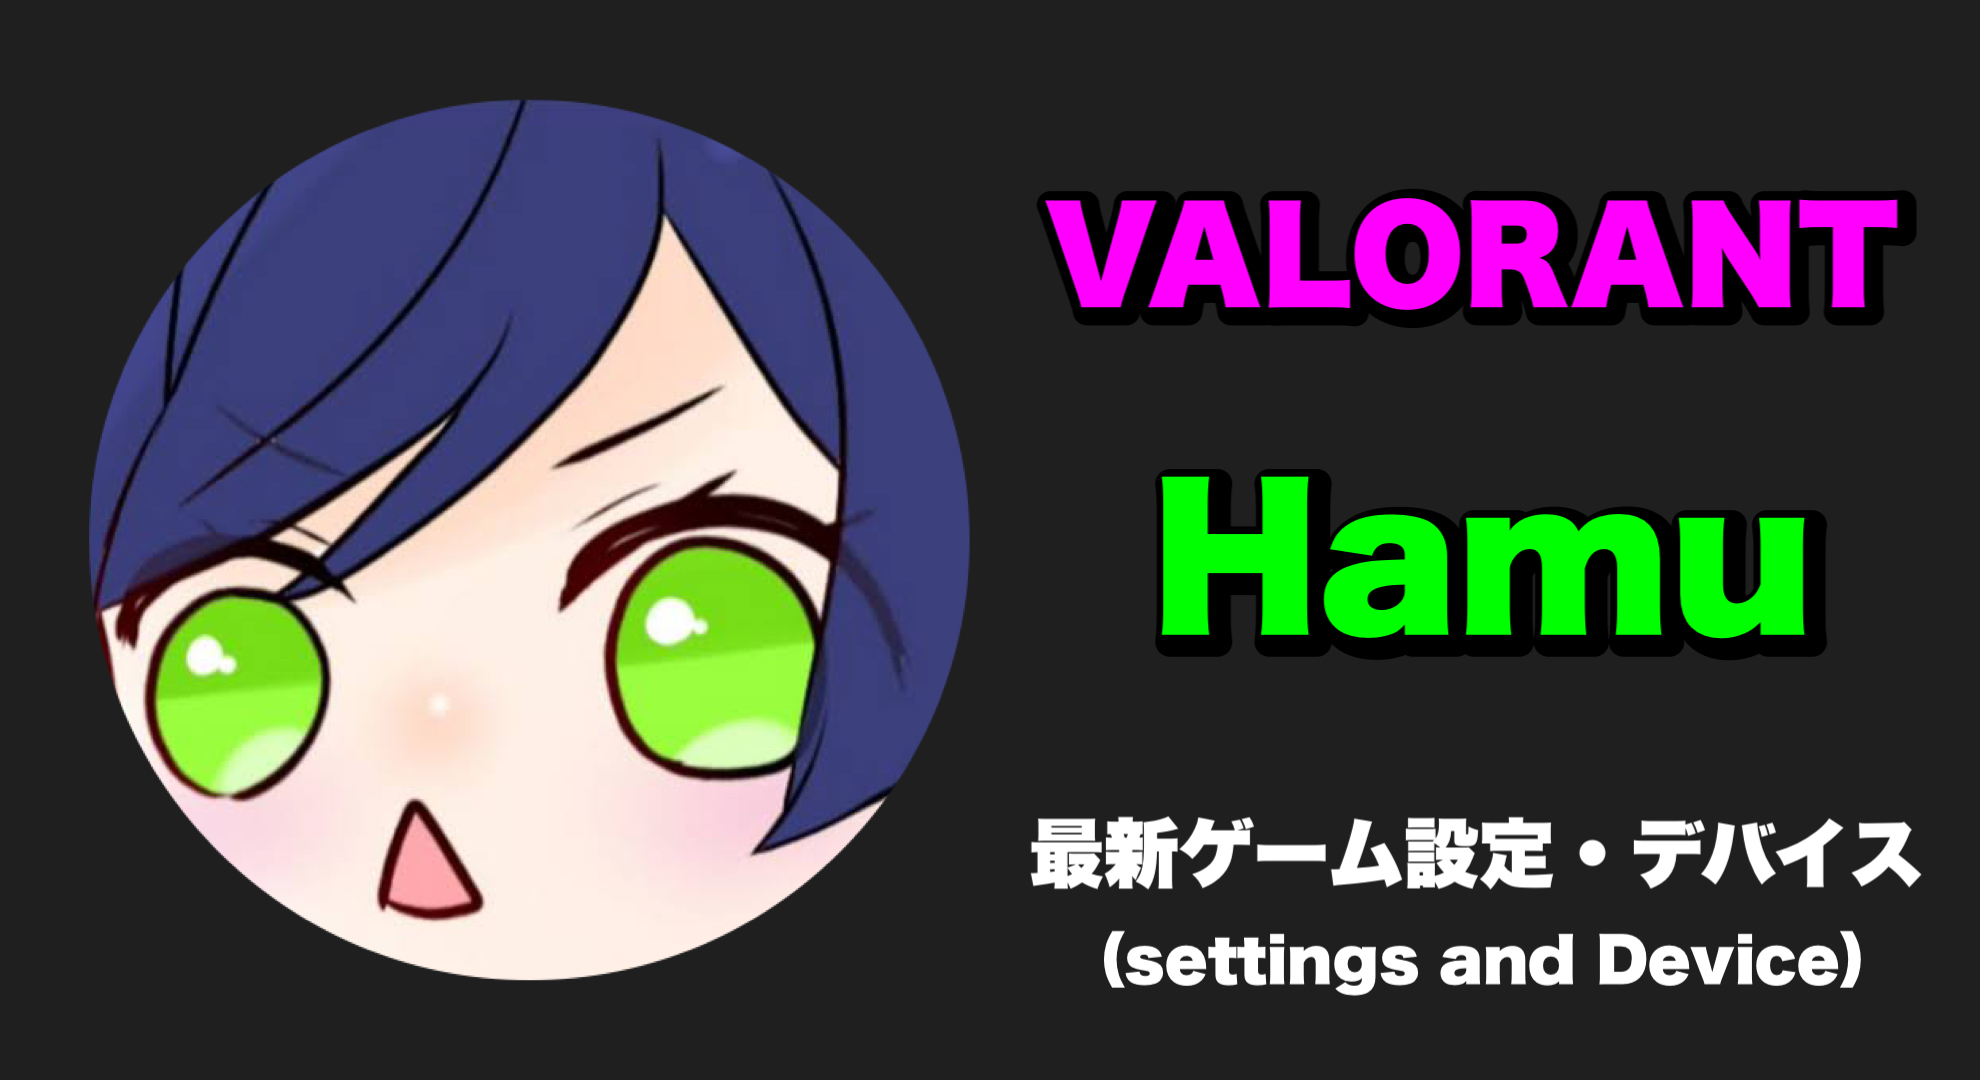 【VALORANT】Hamu(みらい) 感度、キー配置、クロスヘア、設定、デバイス Hamu sens Hamu settings Hamu crosshair Hamu device